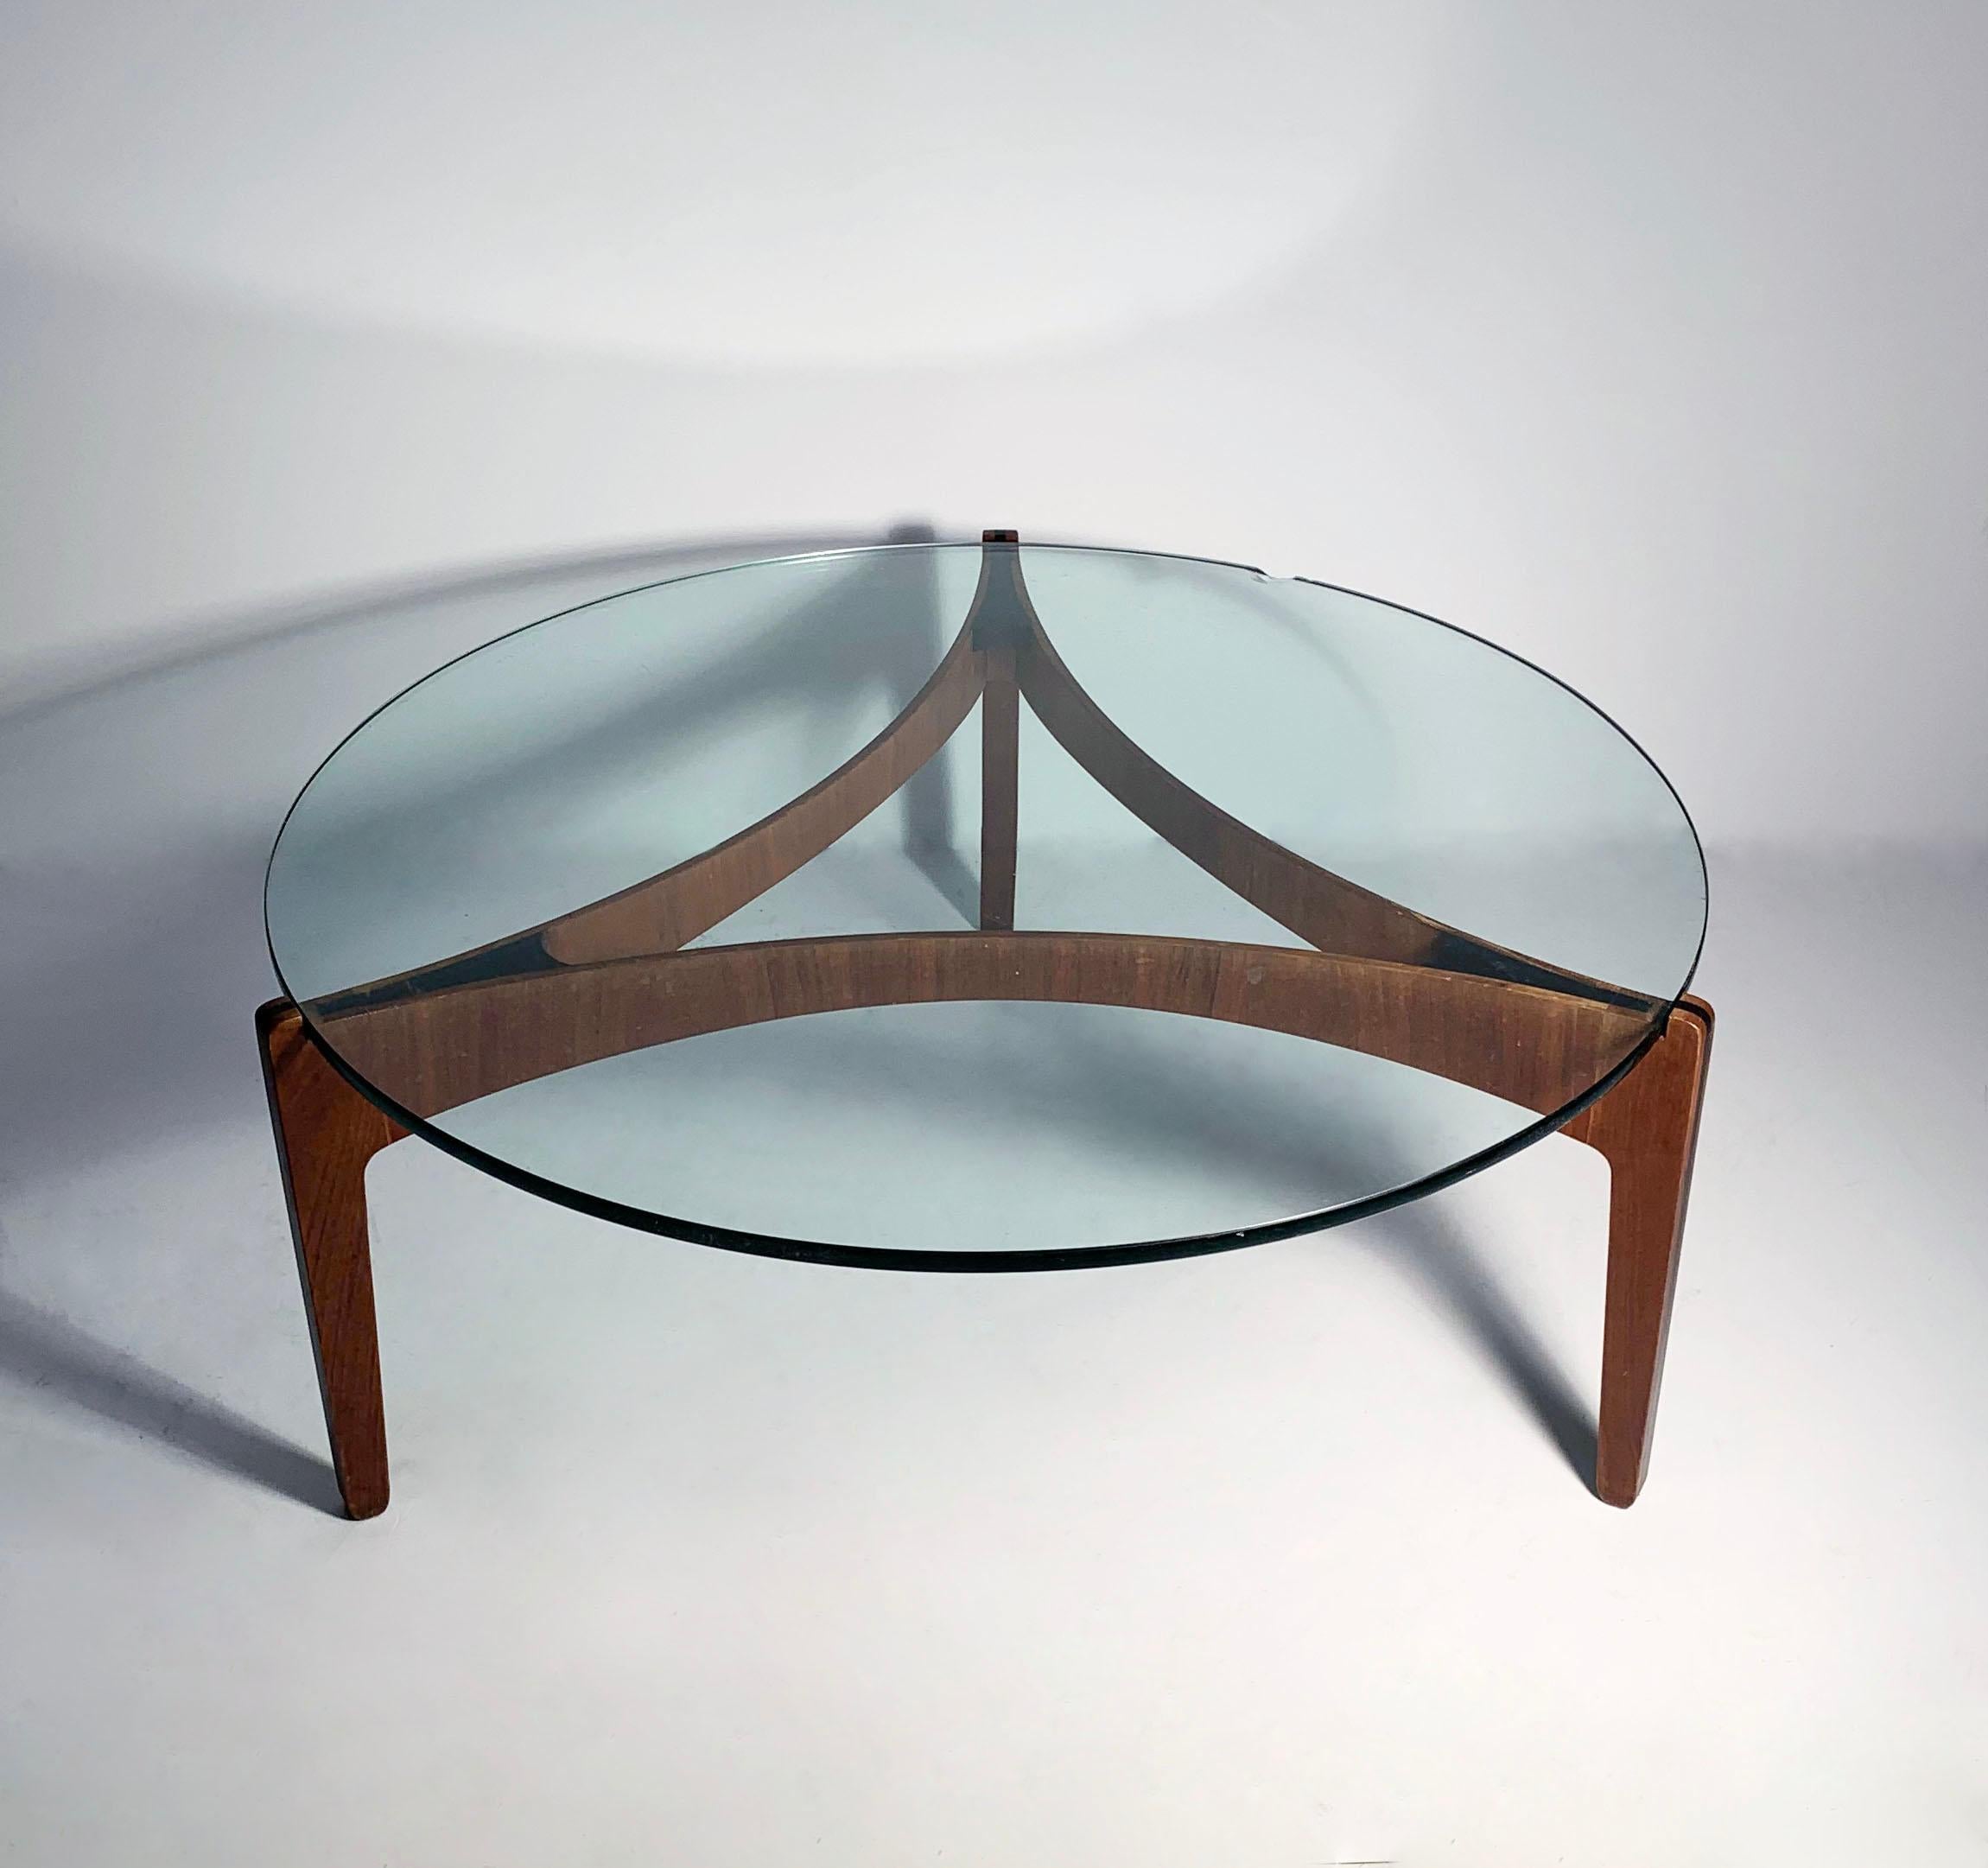 Coffee table by Sven Ellekaer for Christian Linneberg.